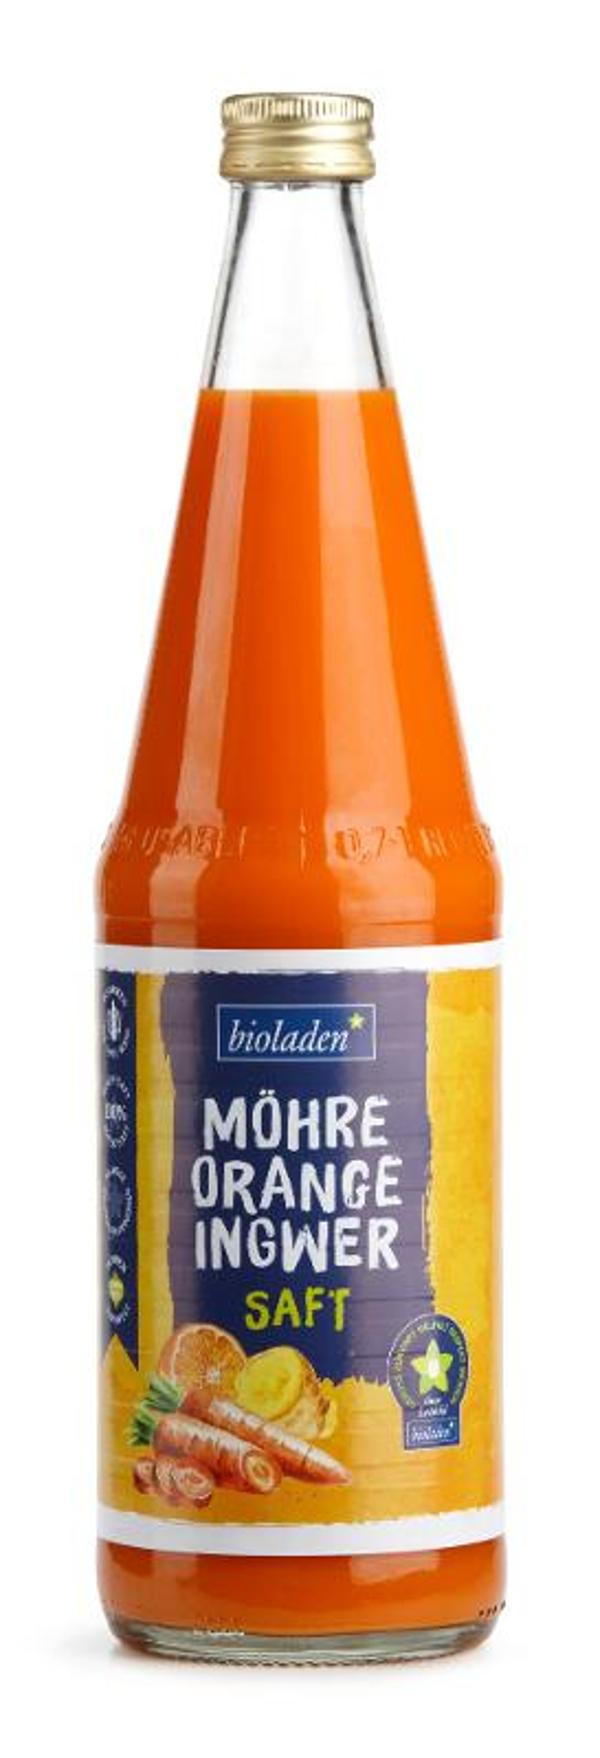 Produktfoto zu Möhre-Orange-Ingwer Saft, 6x0,7 l